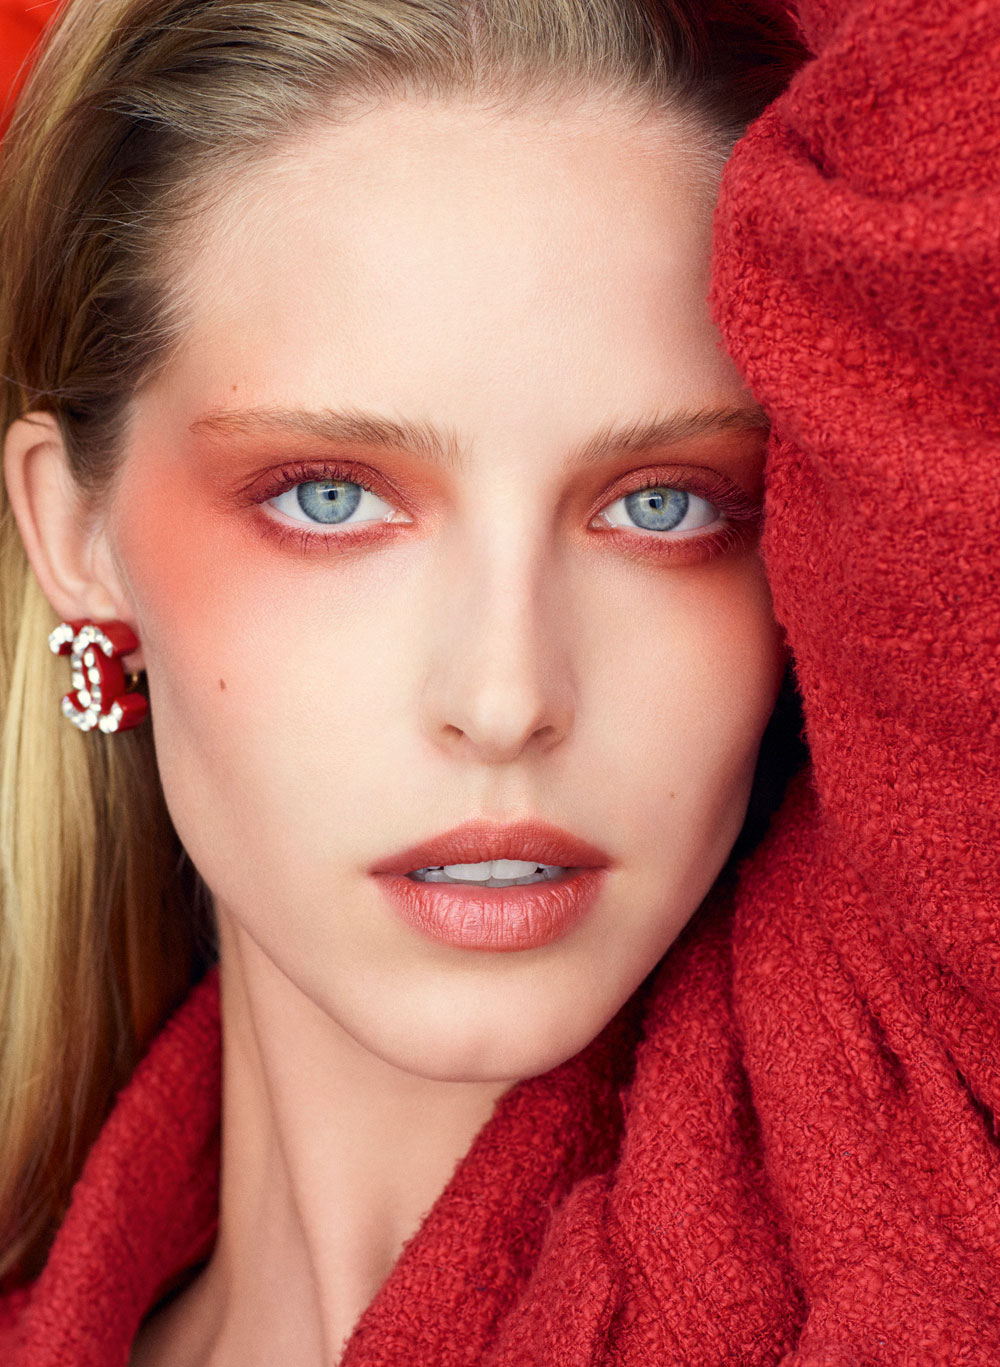 Chanel Beauty setzt beim Frühlingslook 2023 auf die Farbe Rot – und sonrisa zeigt, wie das aussieht. 